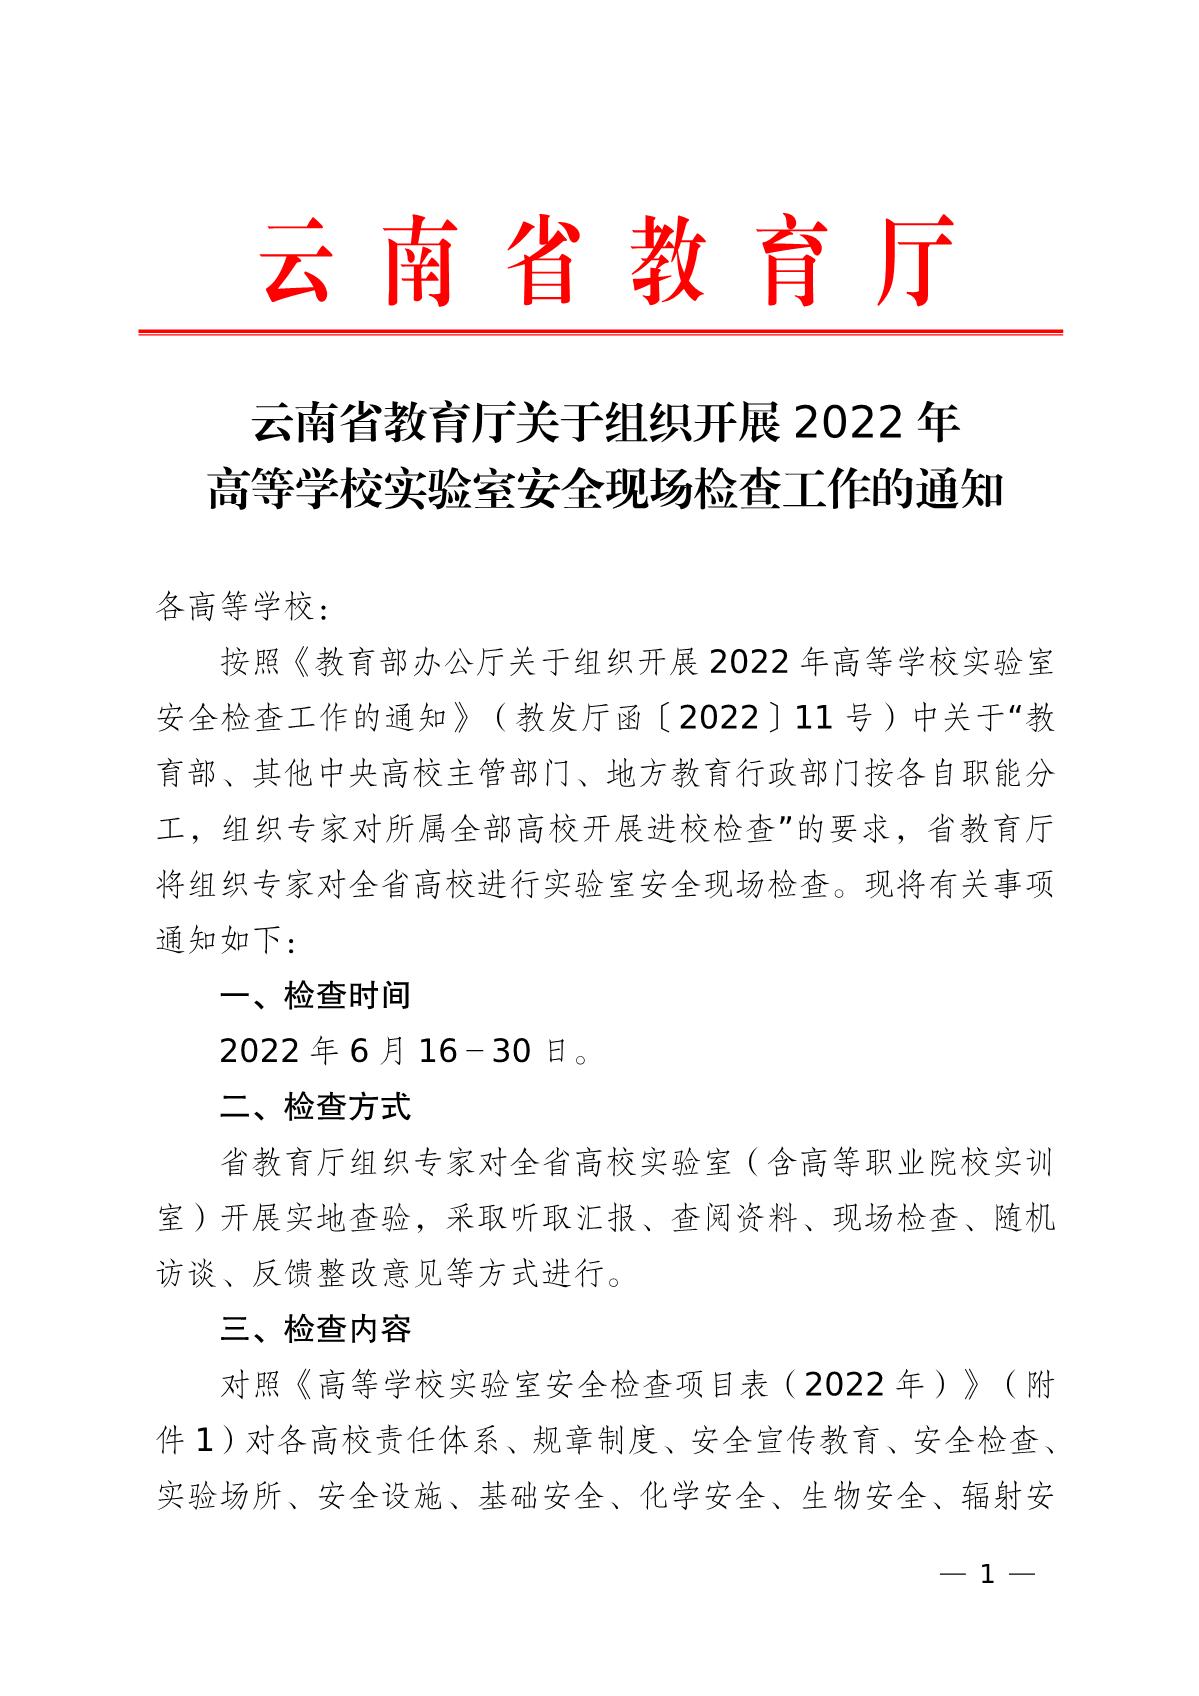 云南省教育厅关于组织开展2022年高等学校实验室安全现场检查工作的通知_1.jpg